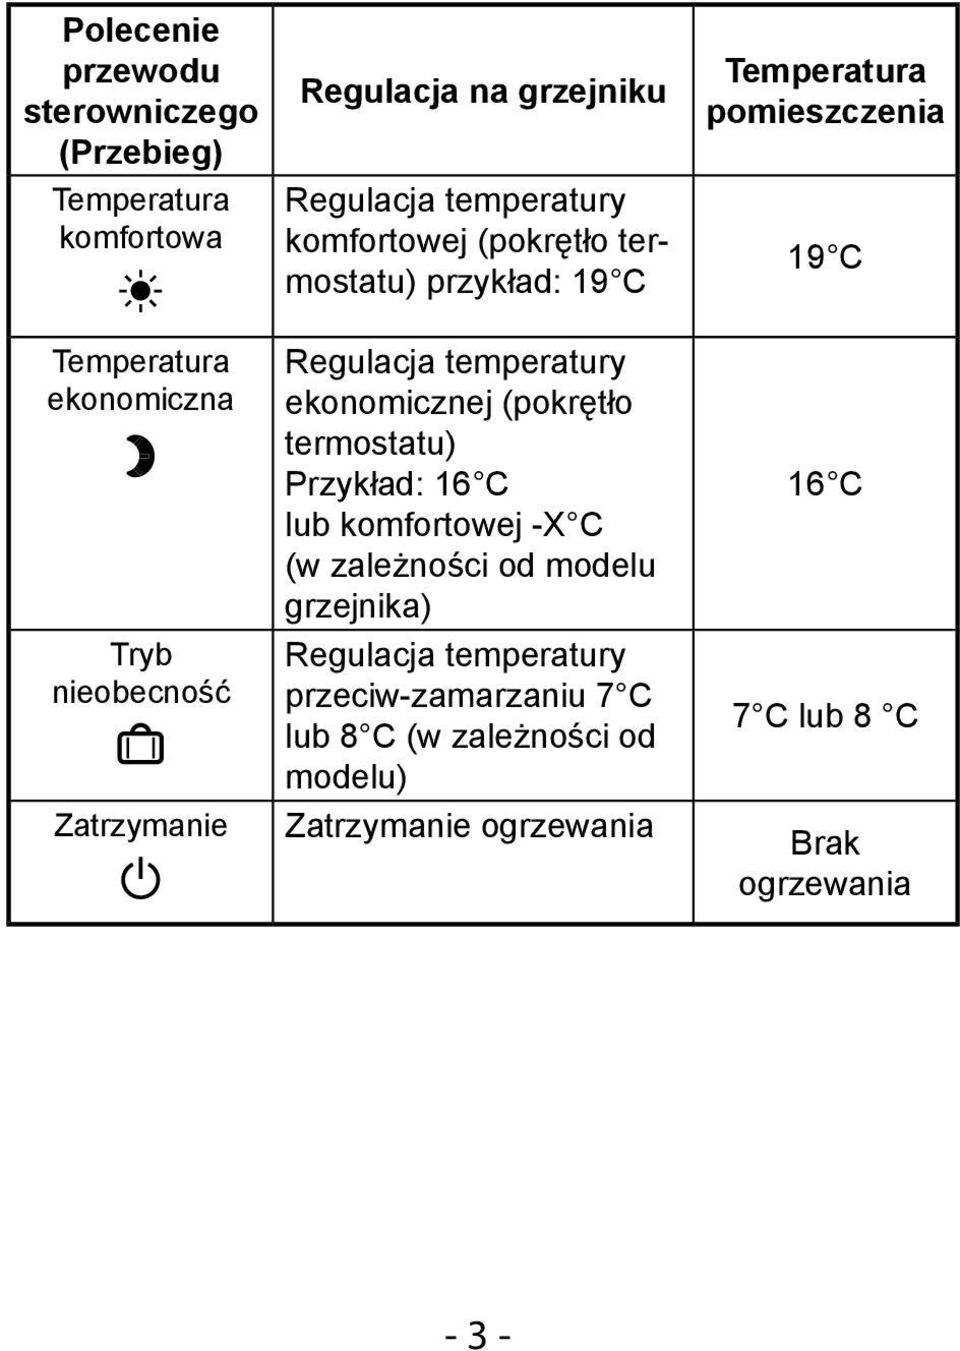 Regulacja temperatury ekonomicznej (pokrętło termostatu) Przykład: 16 C lub komfortowej -X C (w zależności od modelu grzejnika)